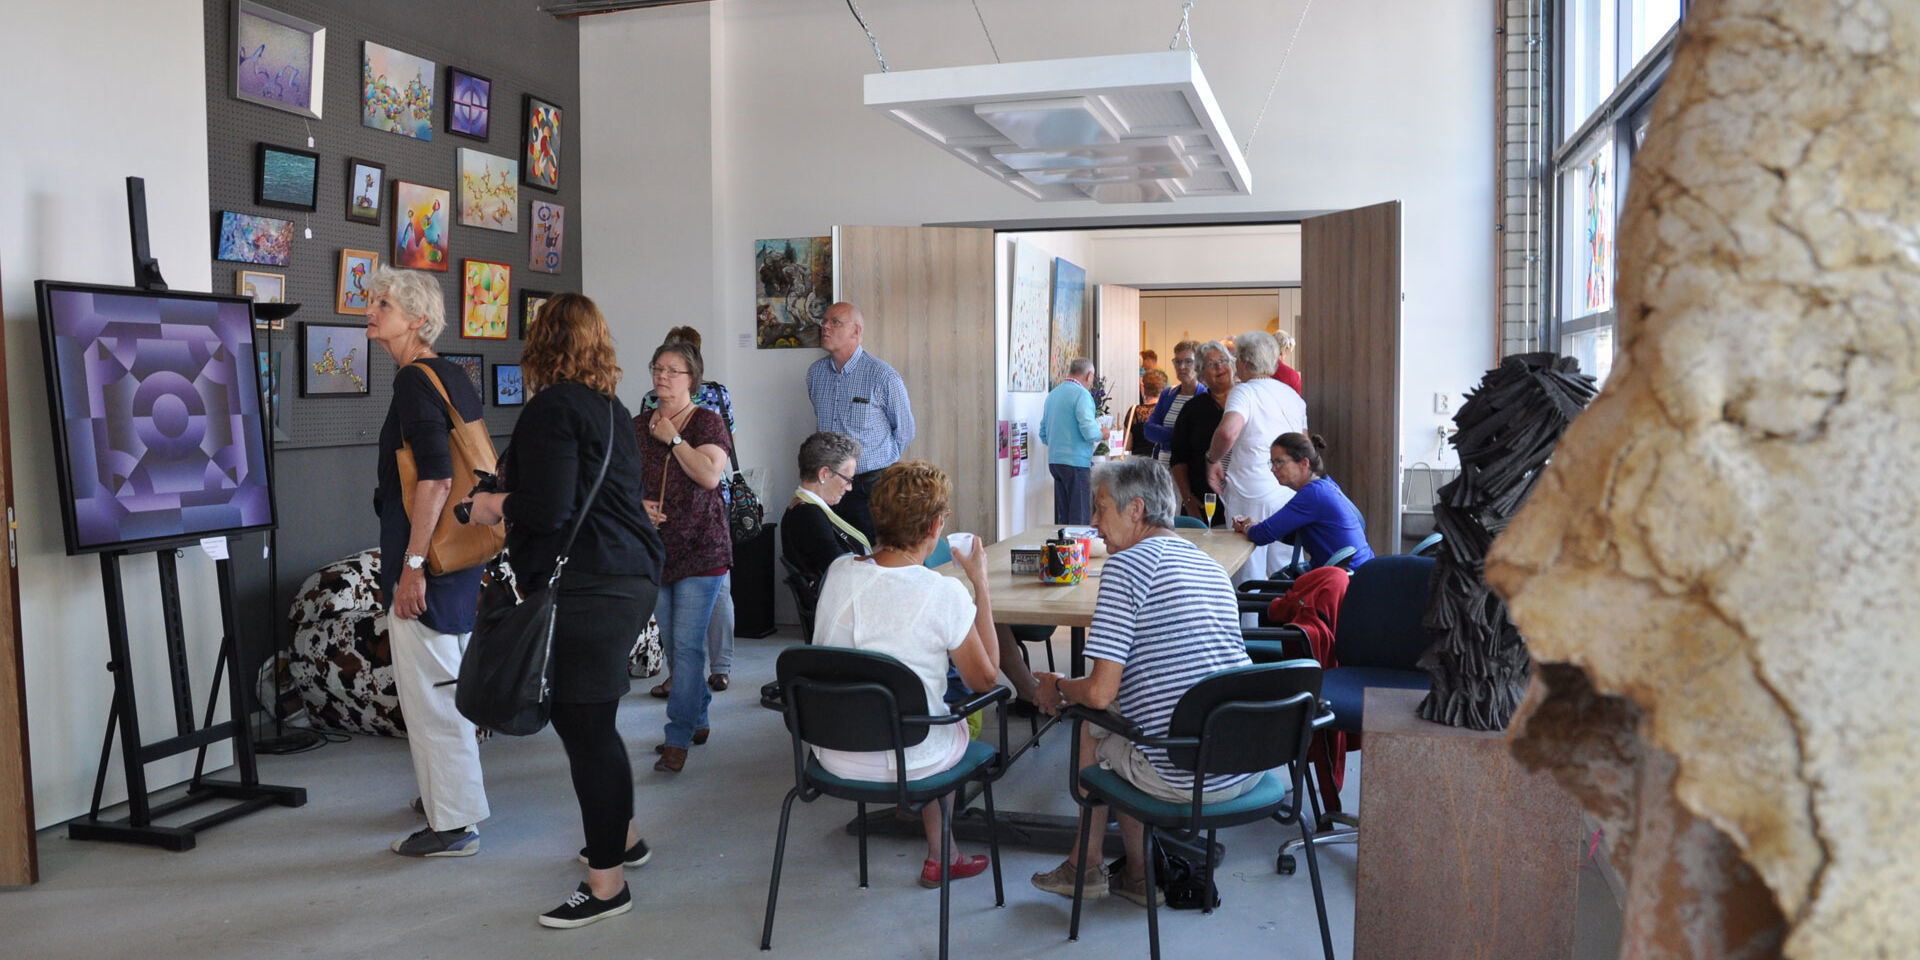 Atelier in het Kunsthuis in het Westland met bezoekers die naar een expositie kijken